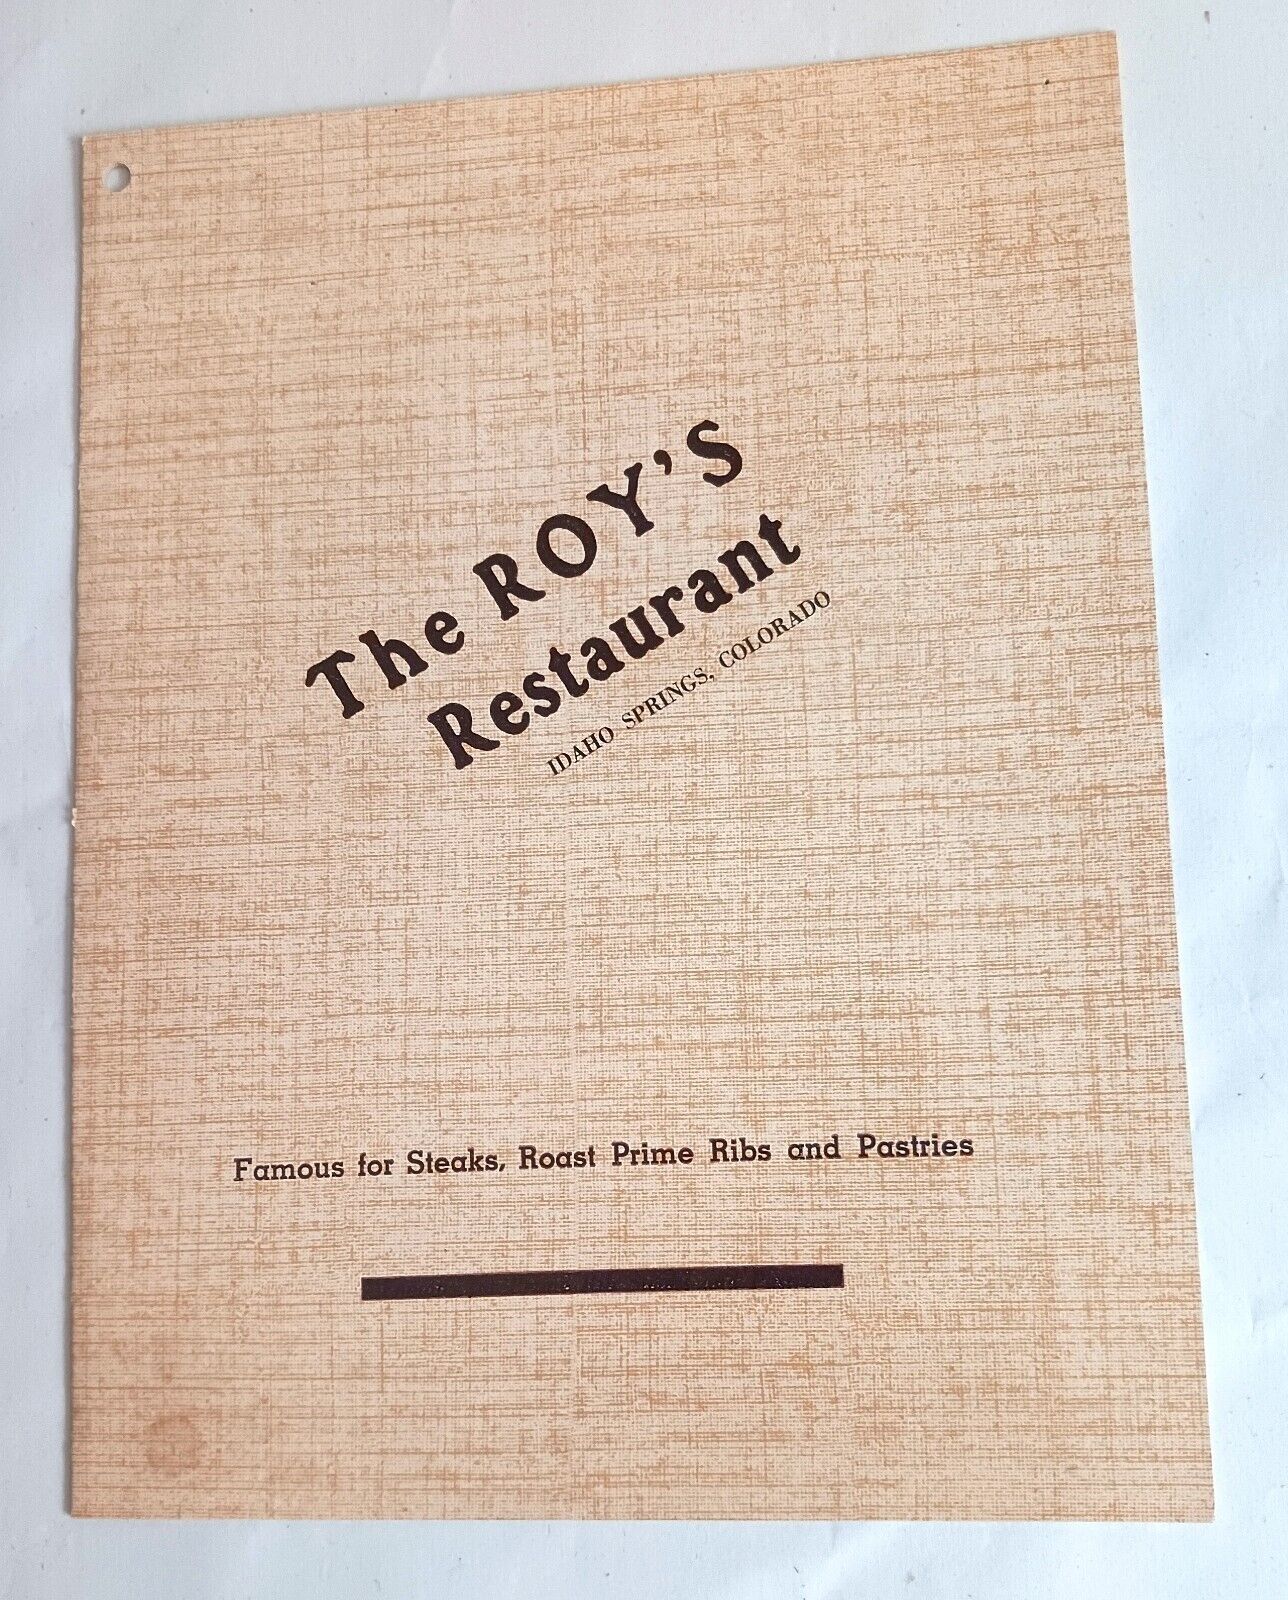 The Roy's Restaurant Vintage Menu Idaho Springs Colorado T-Bone Steak Meal 3.50